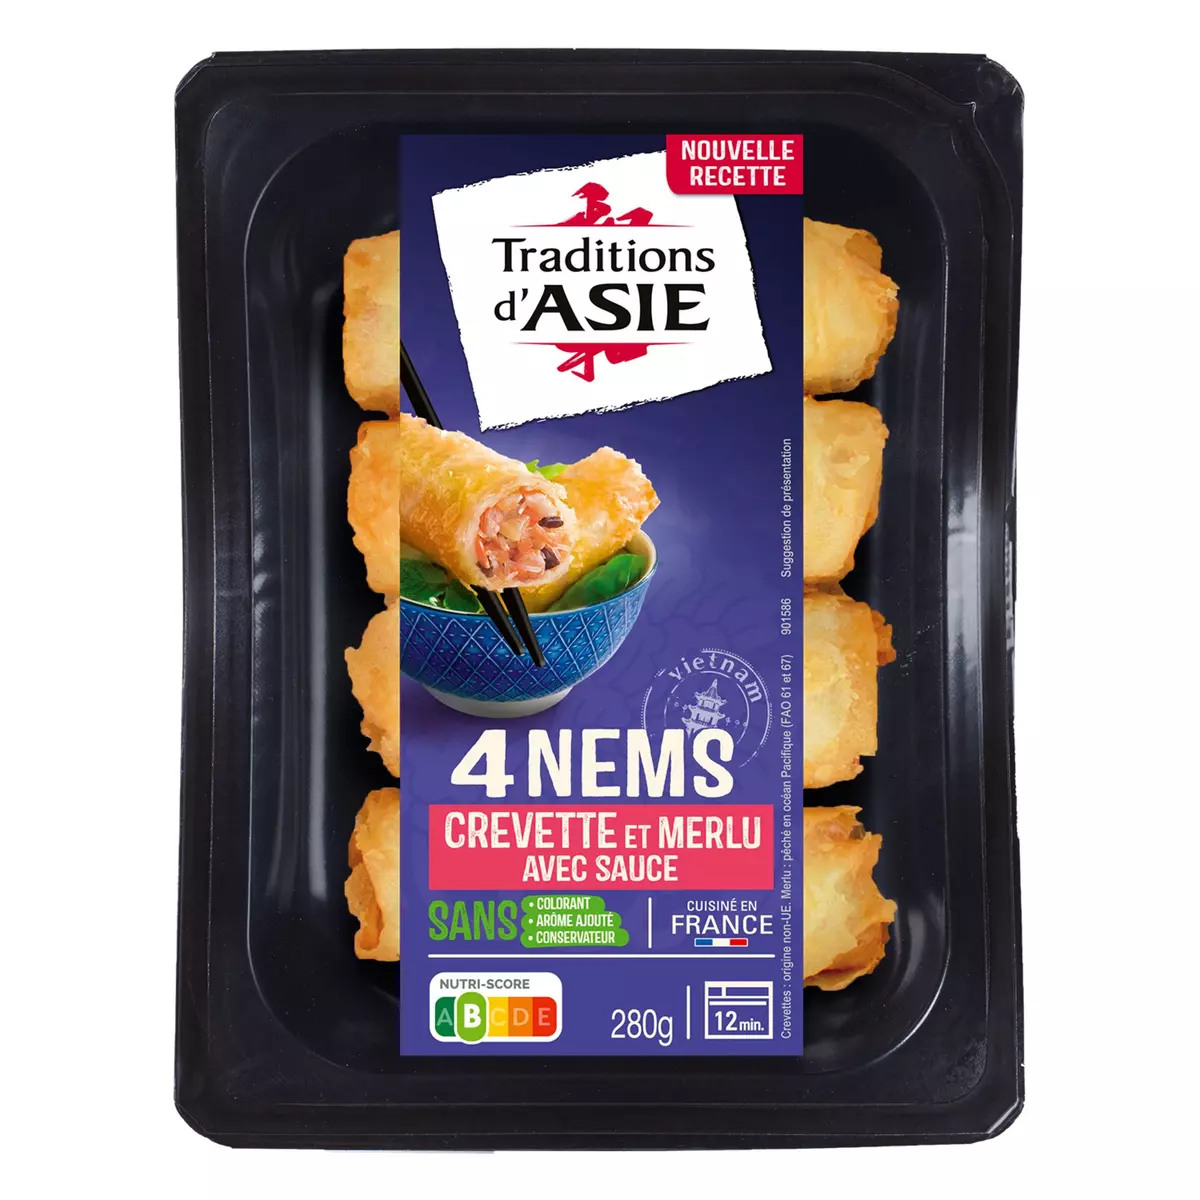 TRADITIONS D'ASIE Nems au crevette et crabe avec sauce 4 nems 280g